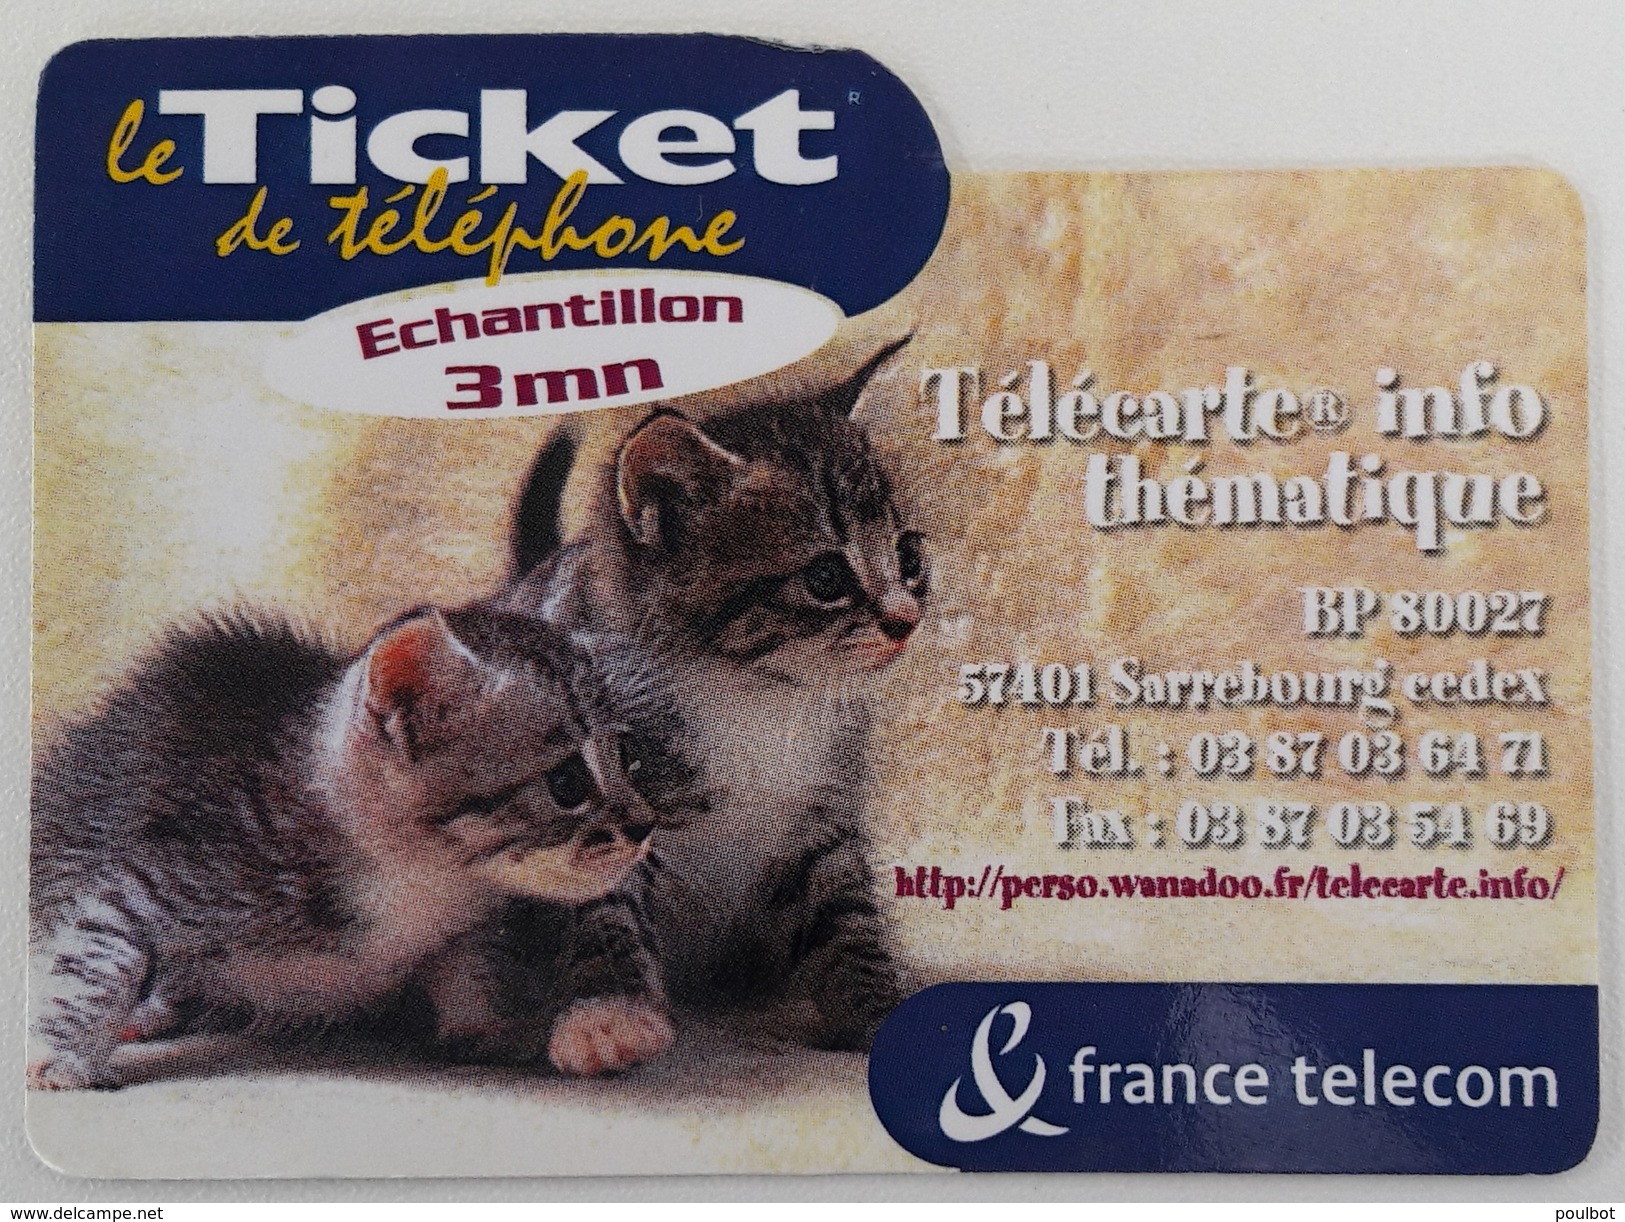 PR 59 Télécarte Info   Le Ticket France Télécom    Code Non  Gratté - FT